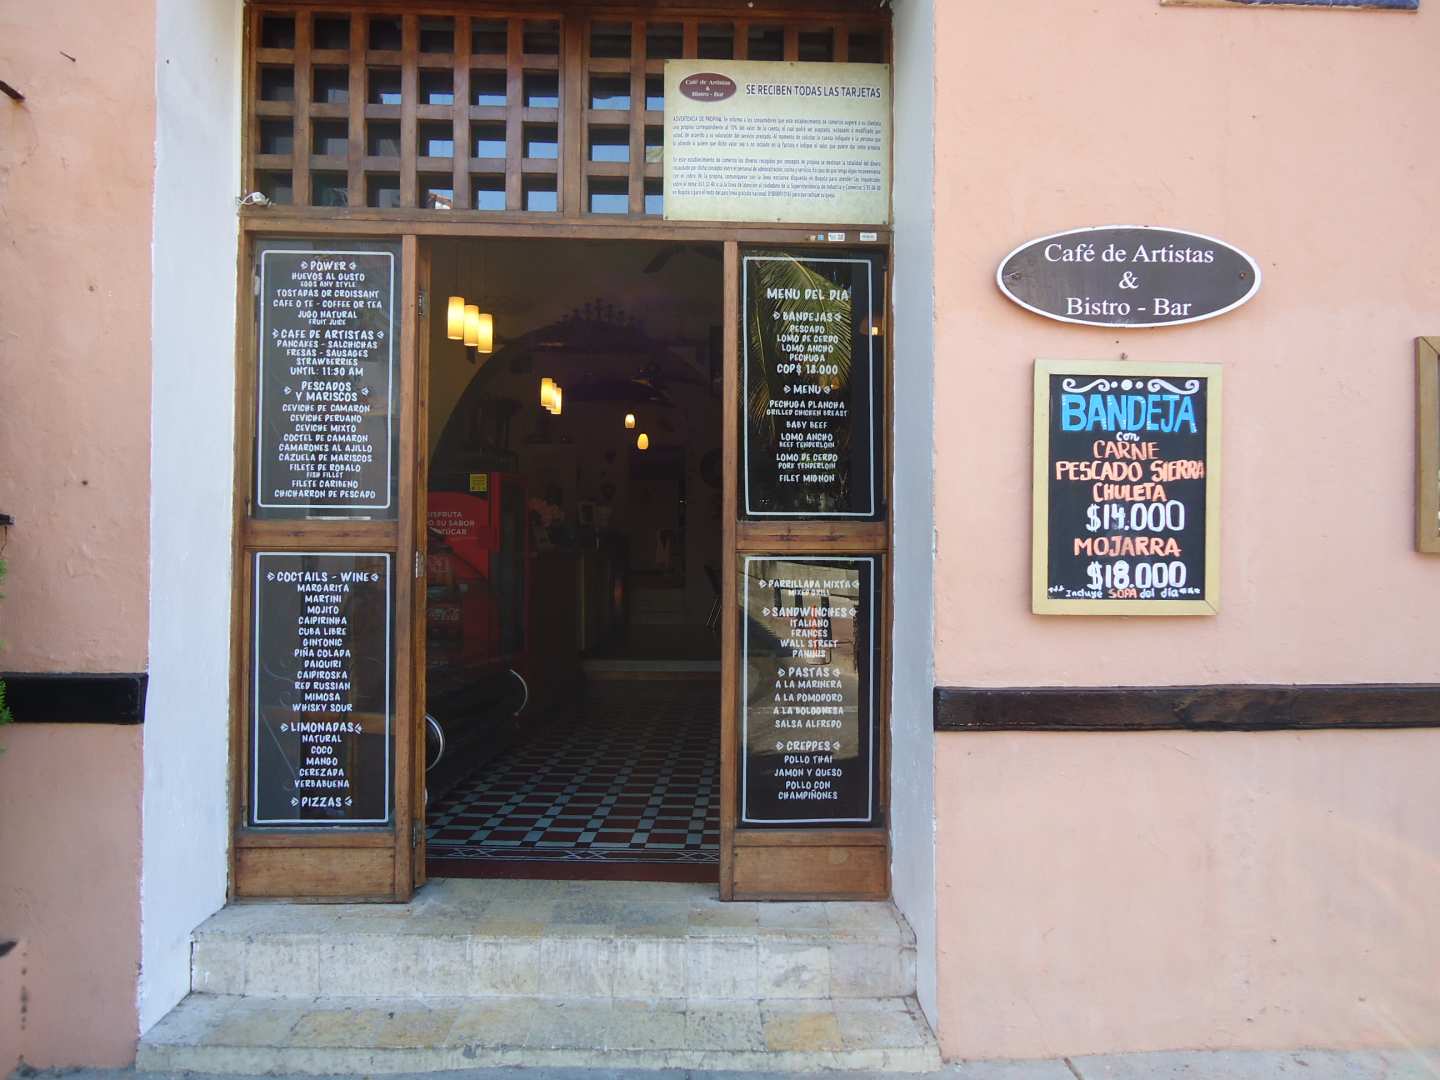 Café de Artistas & Bistro-bar